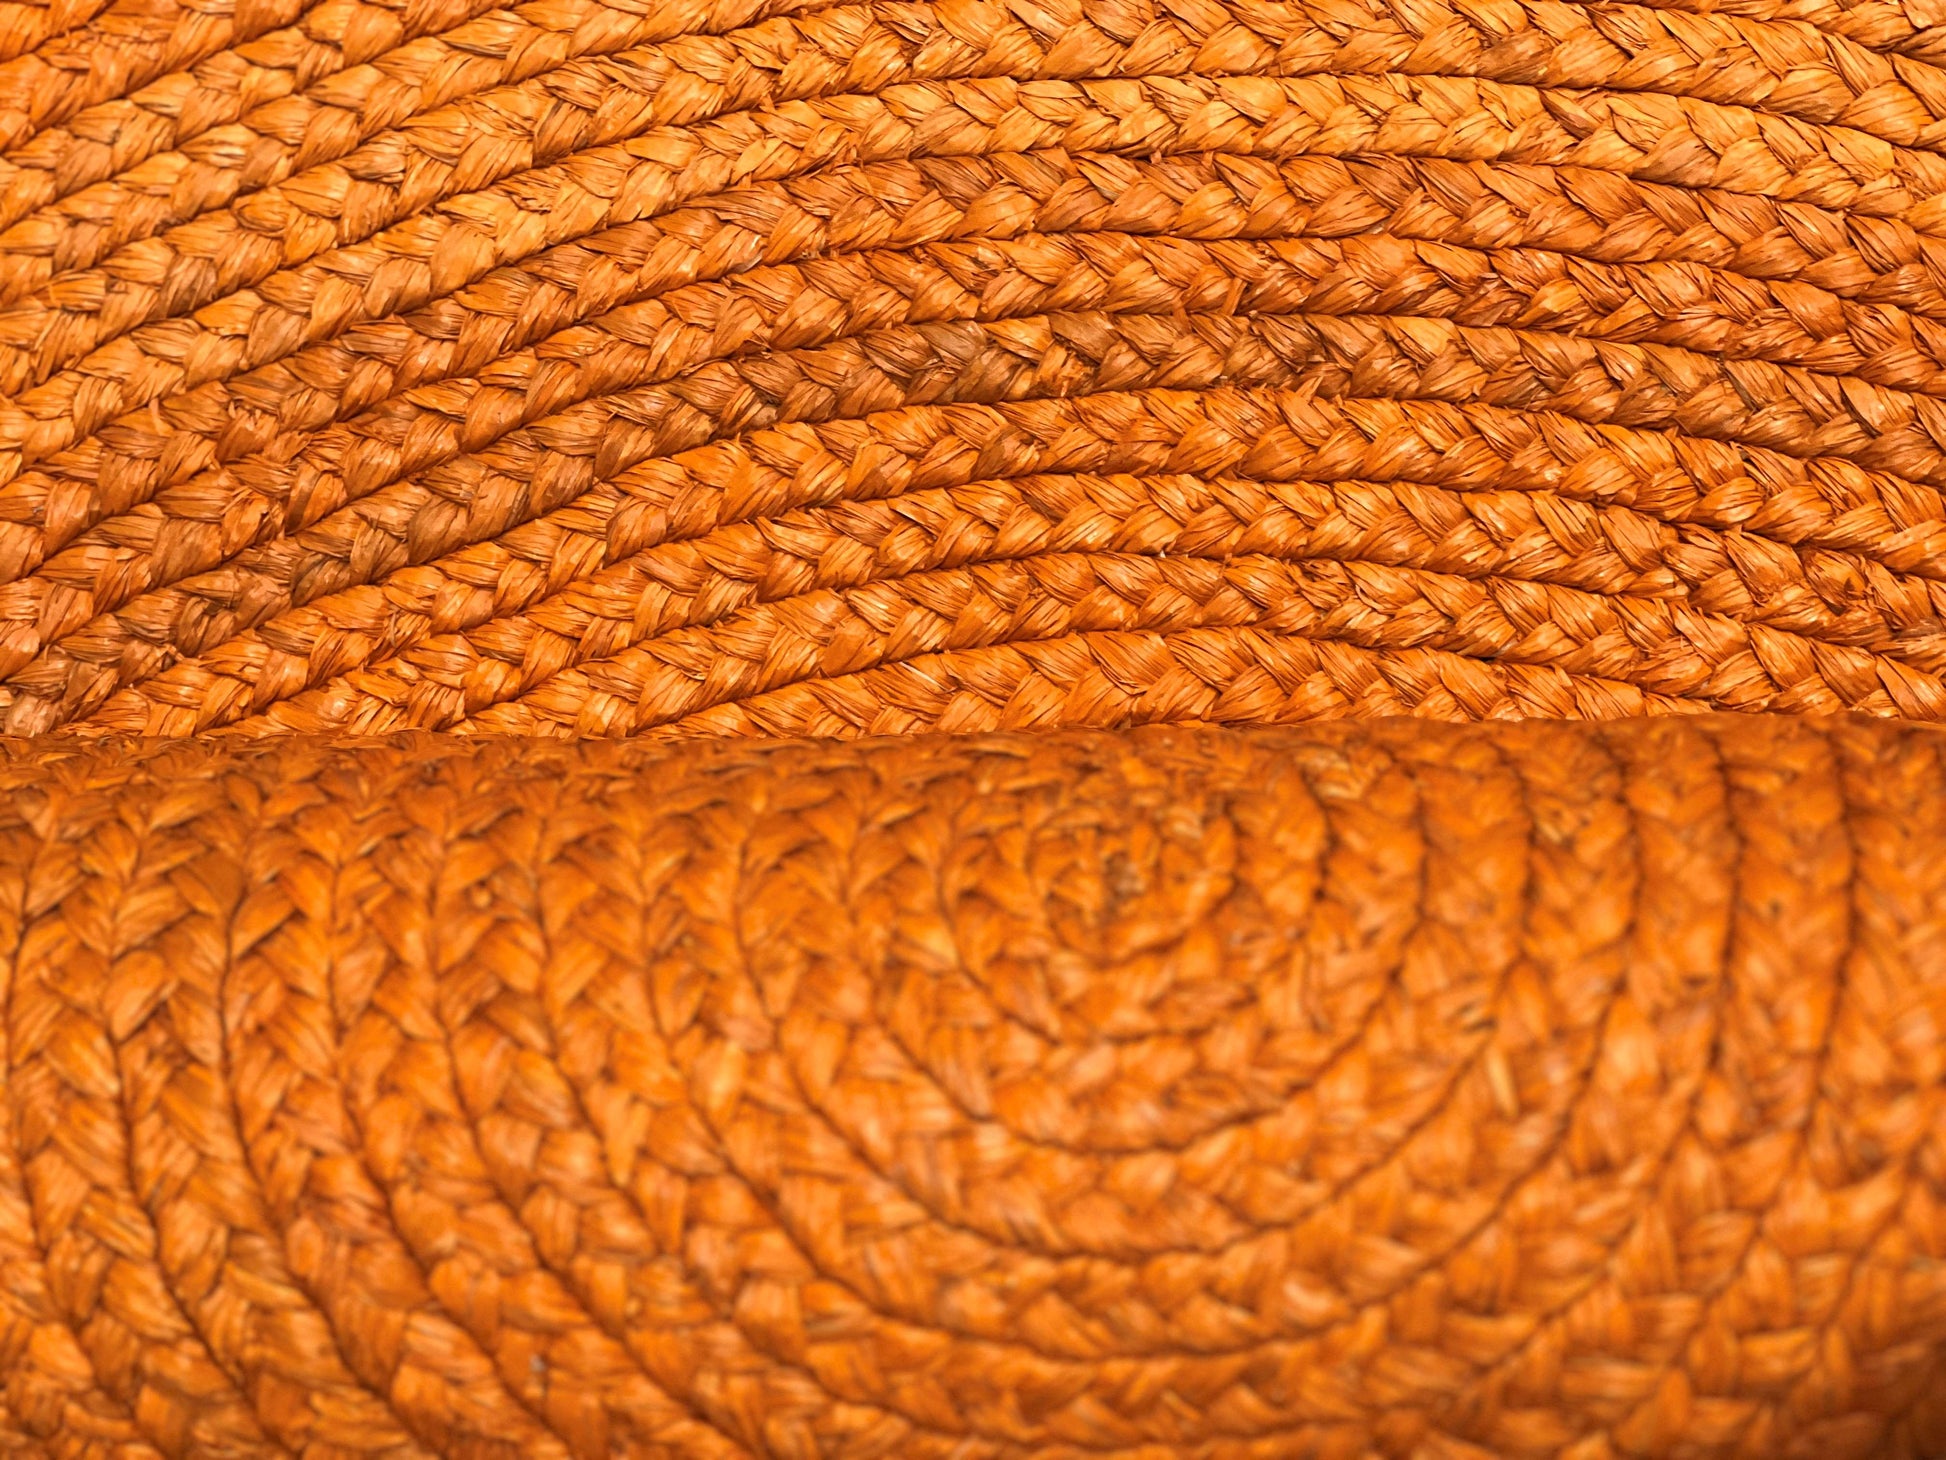 Tapis rond en raphia naturel & orange- Miriam- 150 cm – INTIMANI